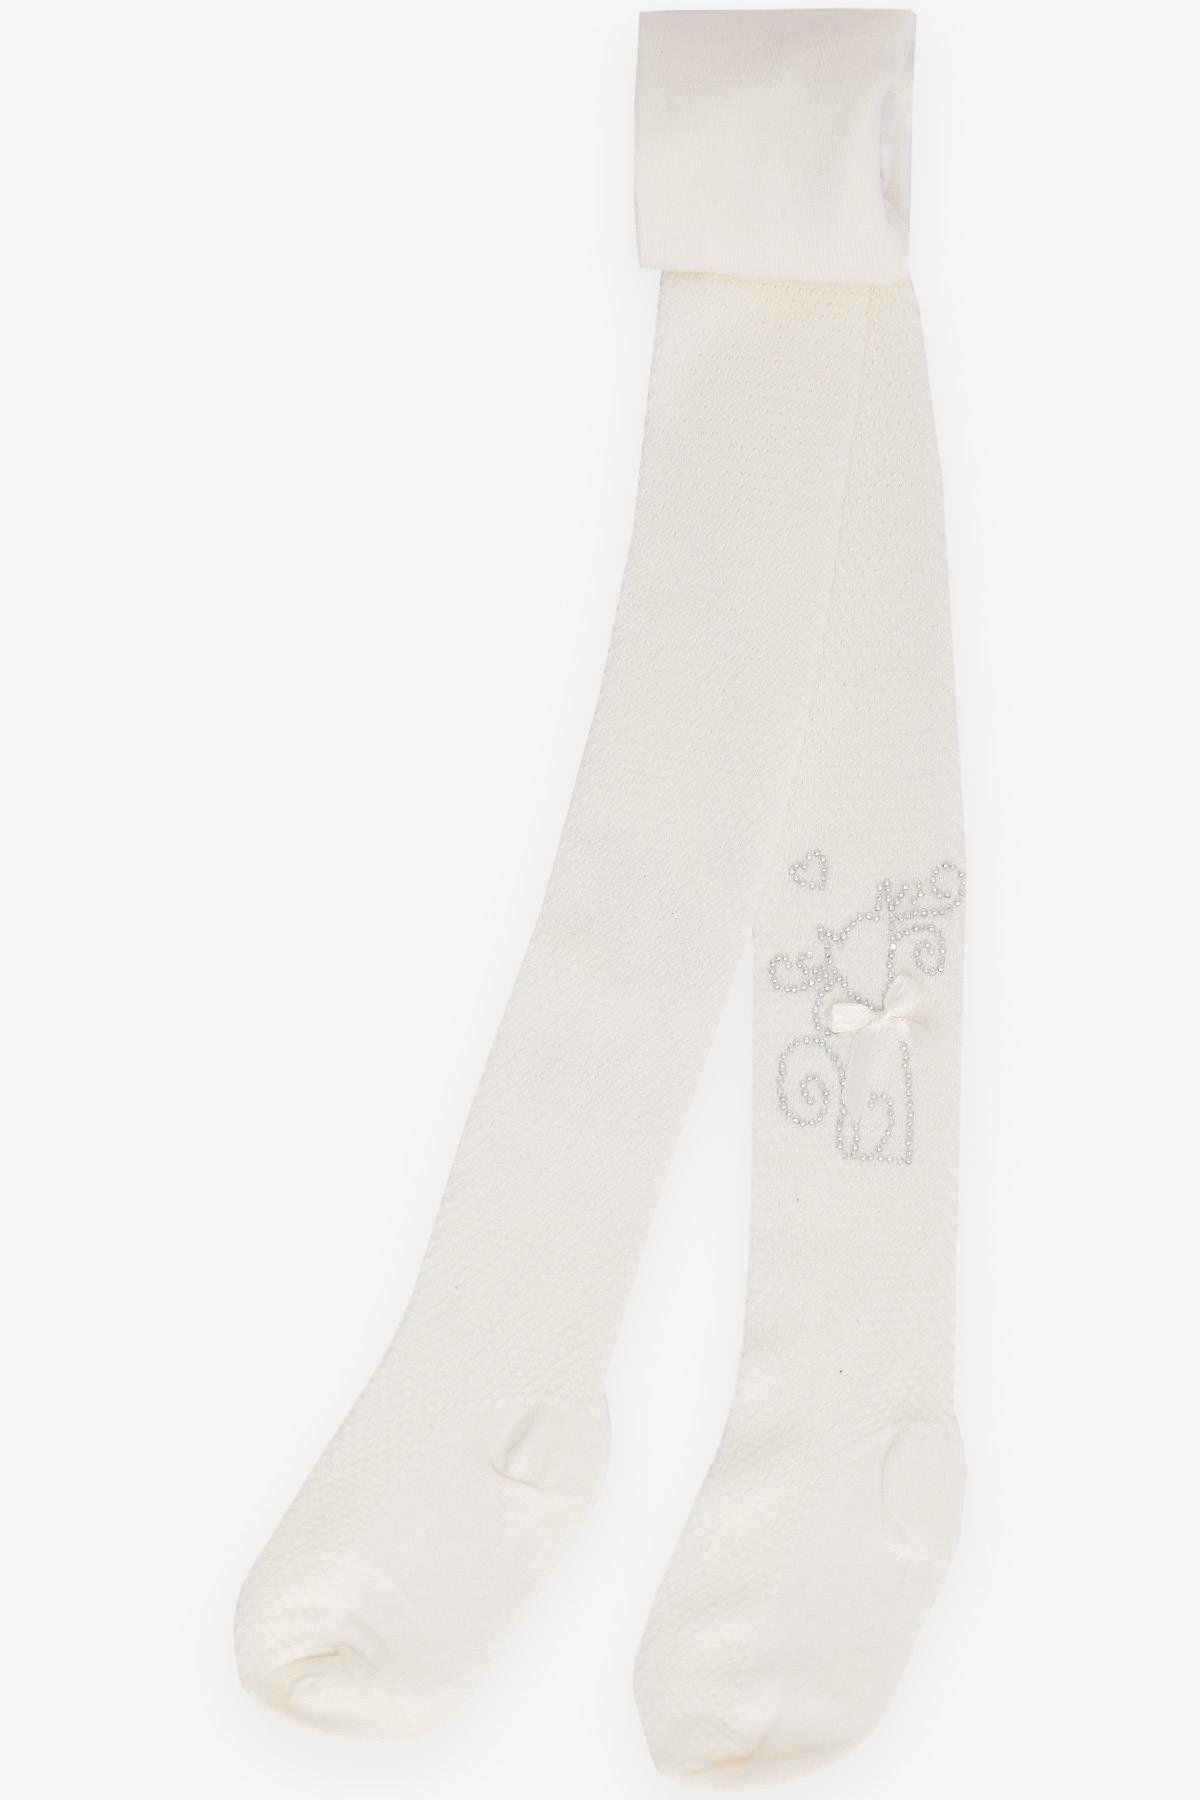 Katamino Kız Çocuk Külotlu Çorap Taşlı Fiyonklu 1-6 Yaş, Ekru